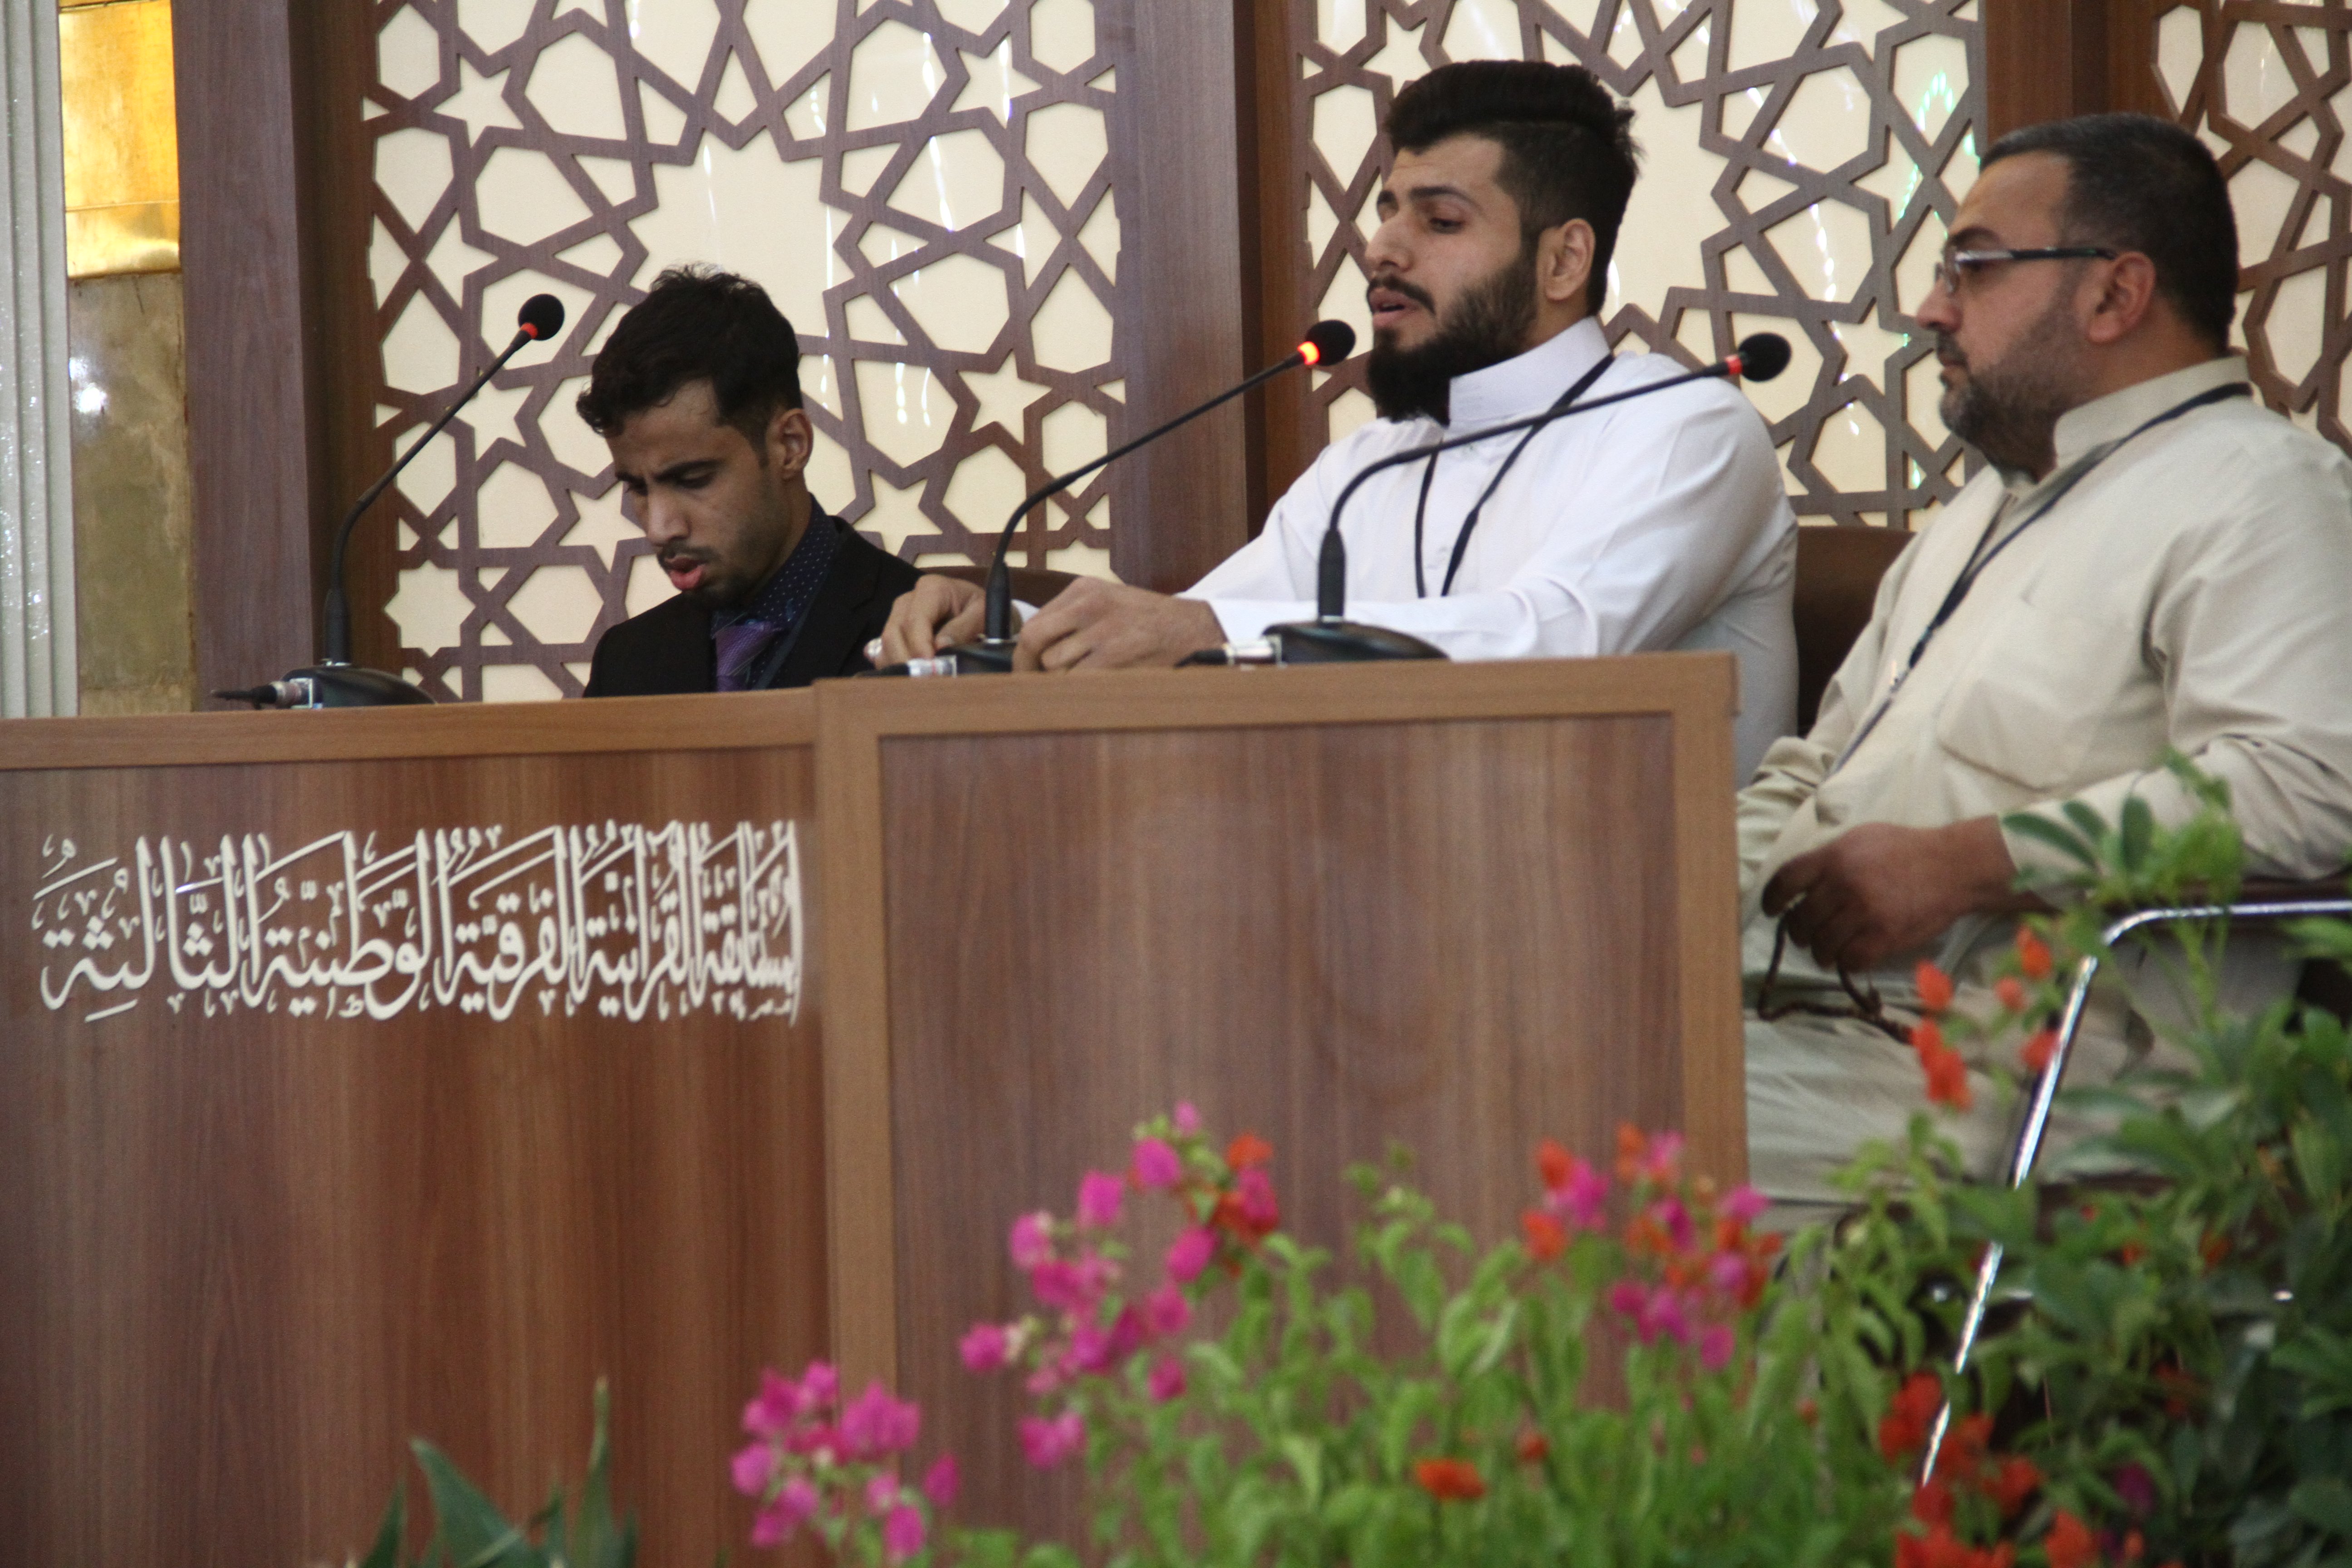 منافسة كبيرة شهدها اليوم الأول في المرحلة الأولى من المسابقة القرآنية الفرقية الثالثة